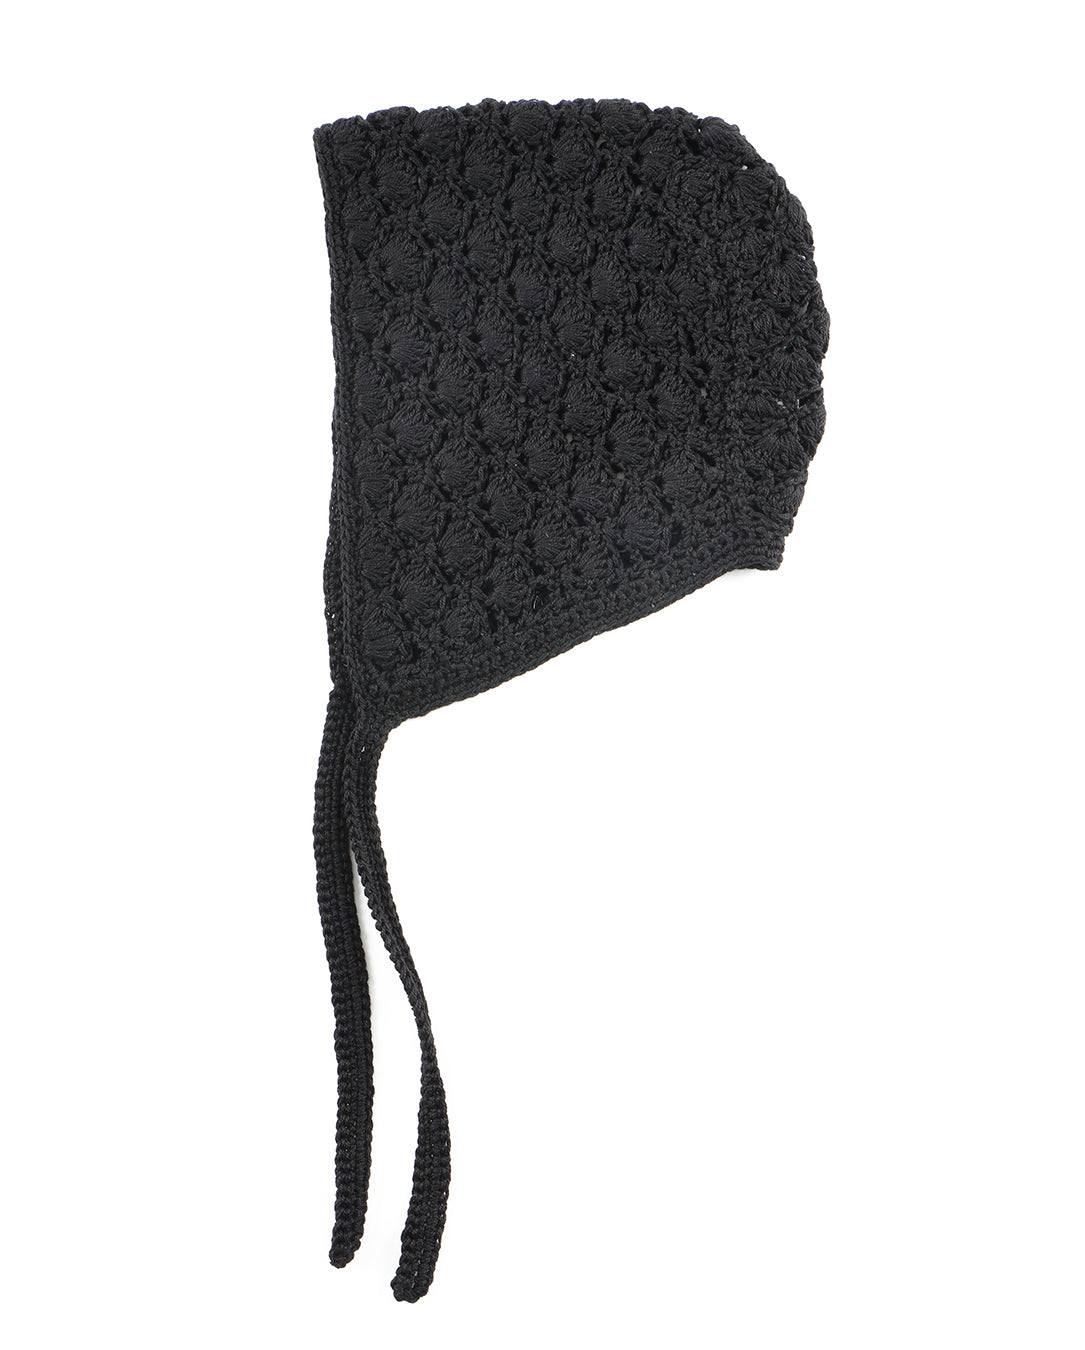 24226 Crocheted Bonnet black